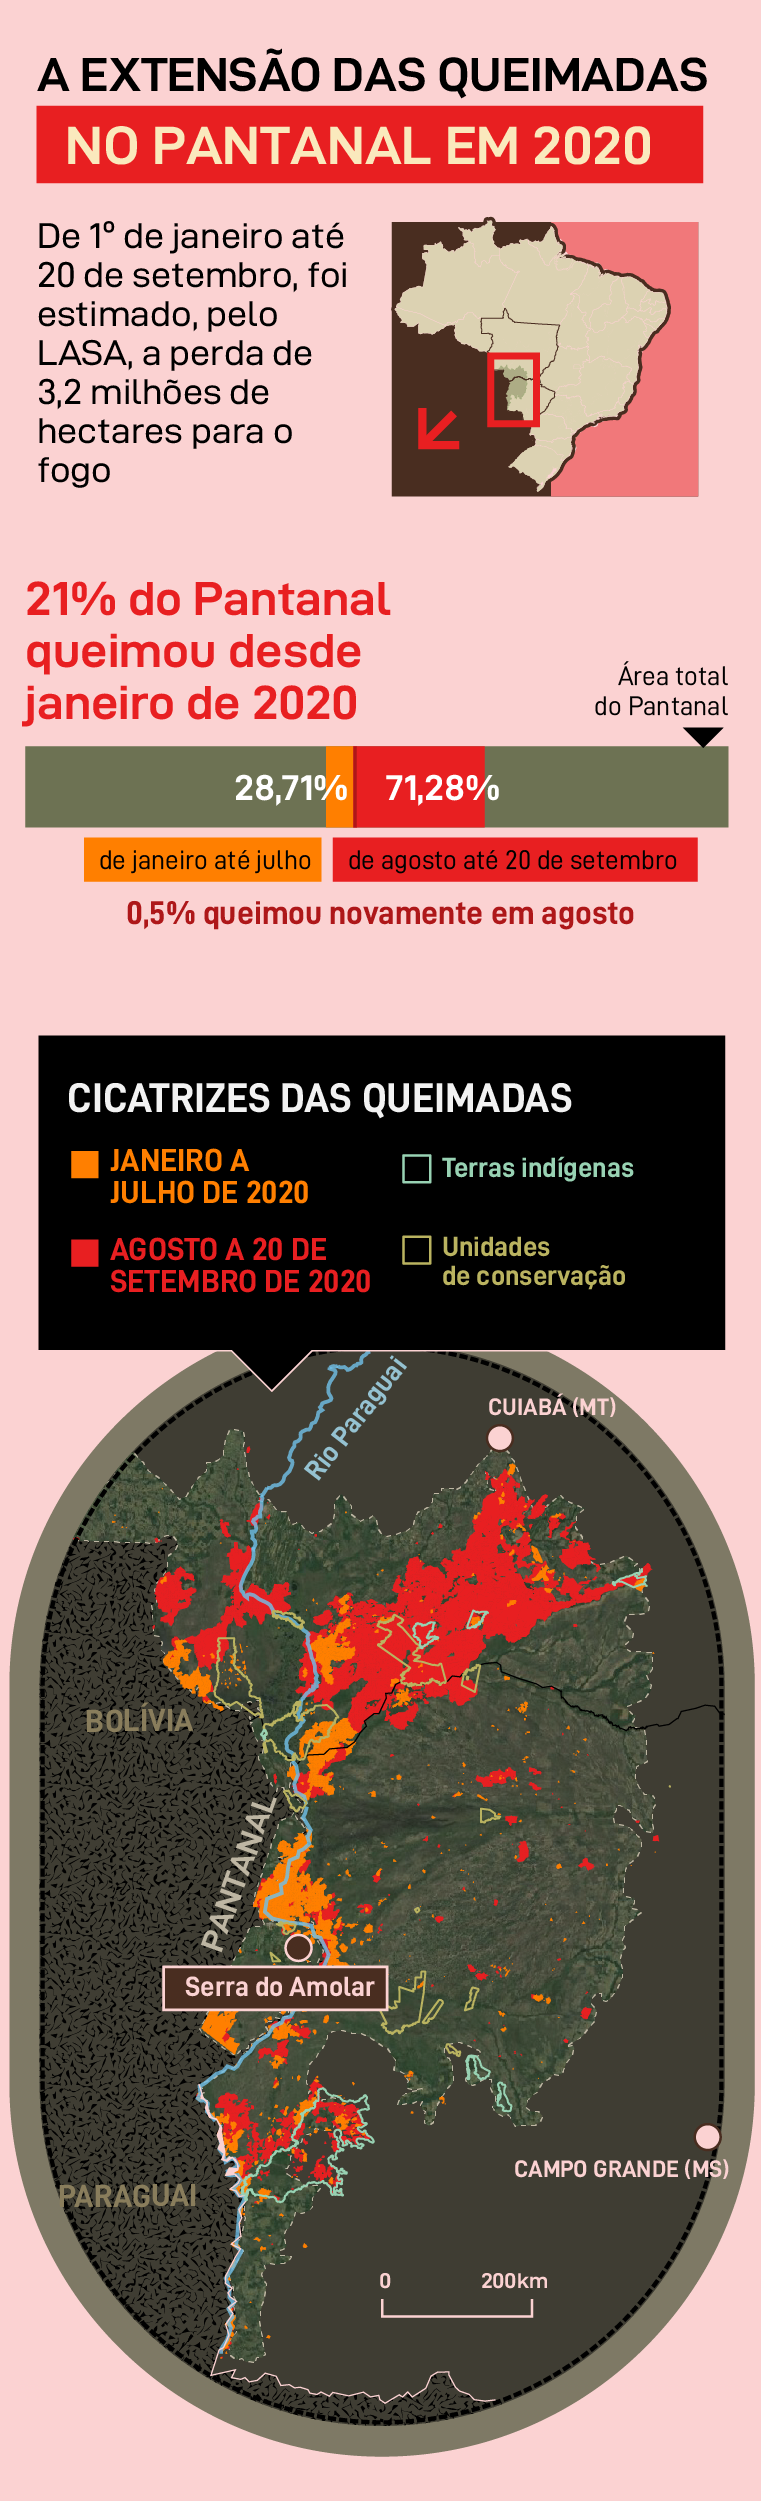 A extensão das queimadas no Pantanal em 2020